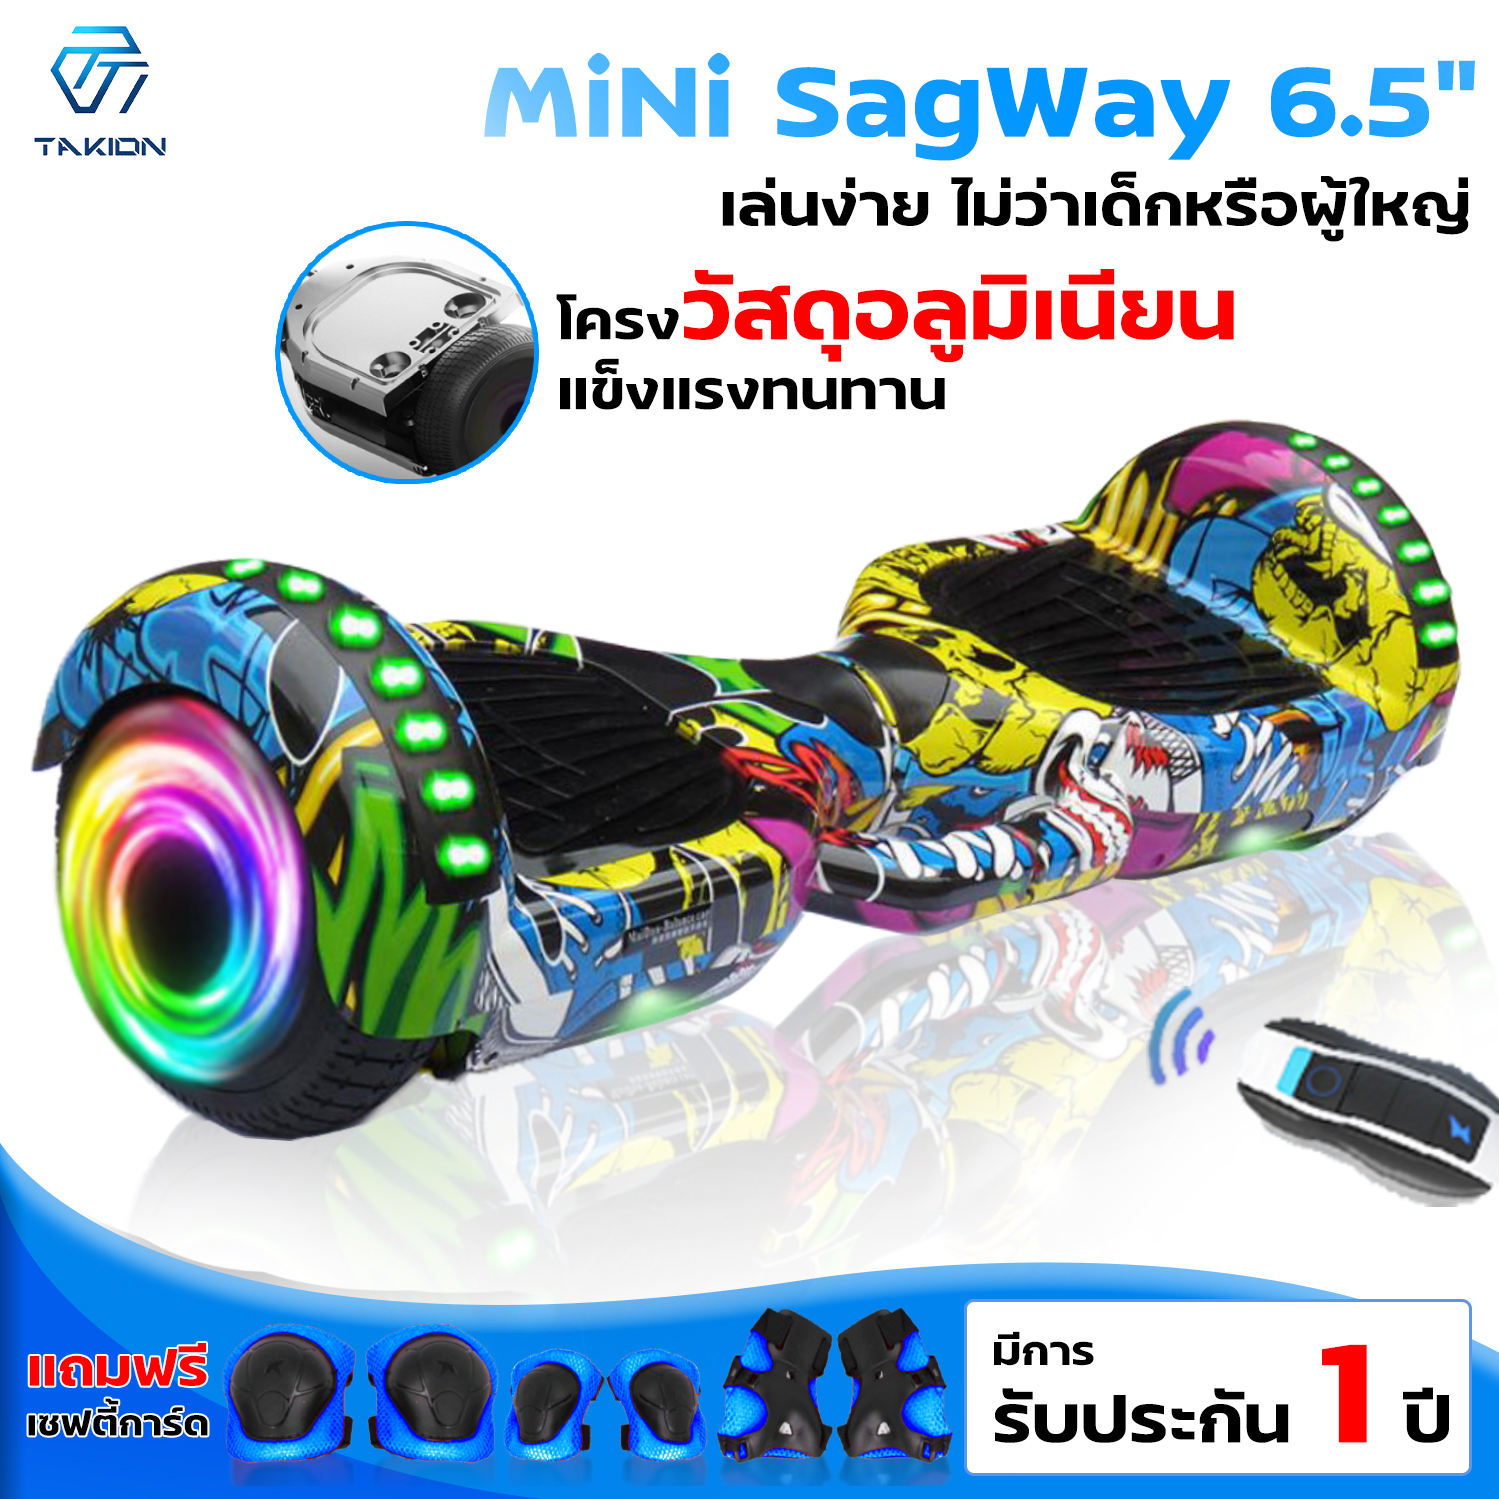 รถยืนไฟฟ้า Mini Segway 6.5 มินิเซกเวย์,ฮาฟเวอร์บอร์,สมาร์ท บาลานซ์ วิลล์, Hoverboard มี 10 สี ให้เลือก พร้อม option remote